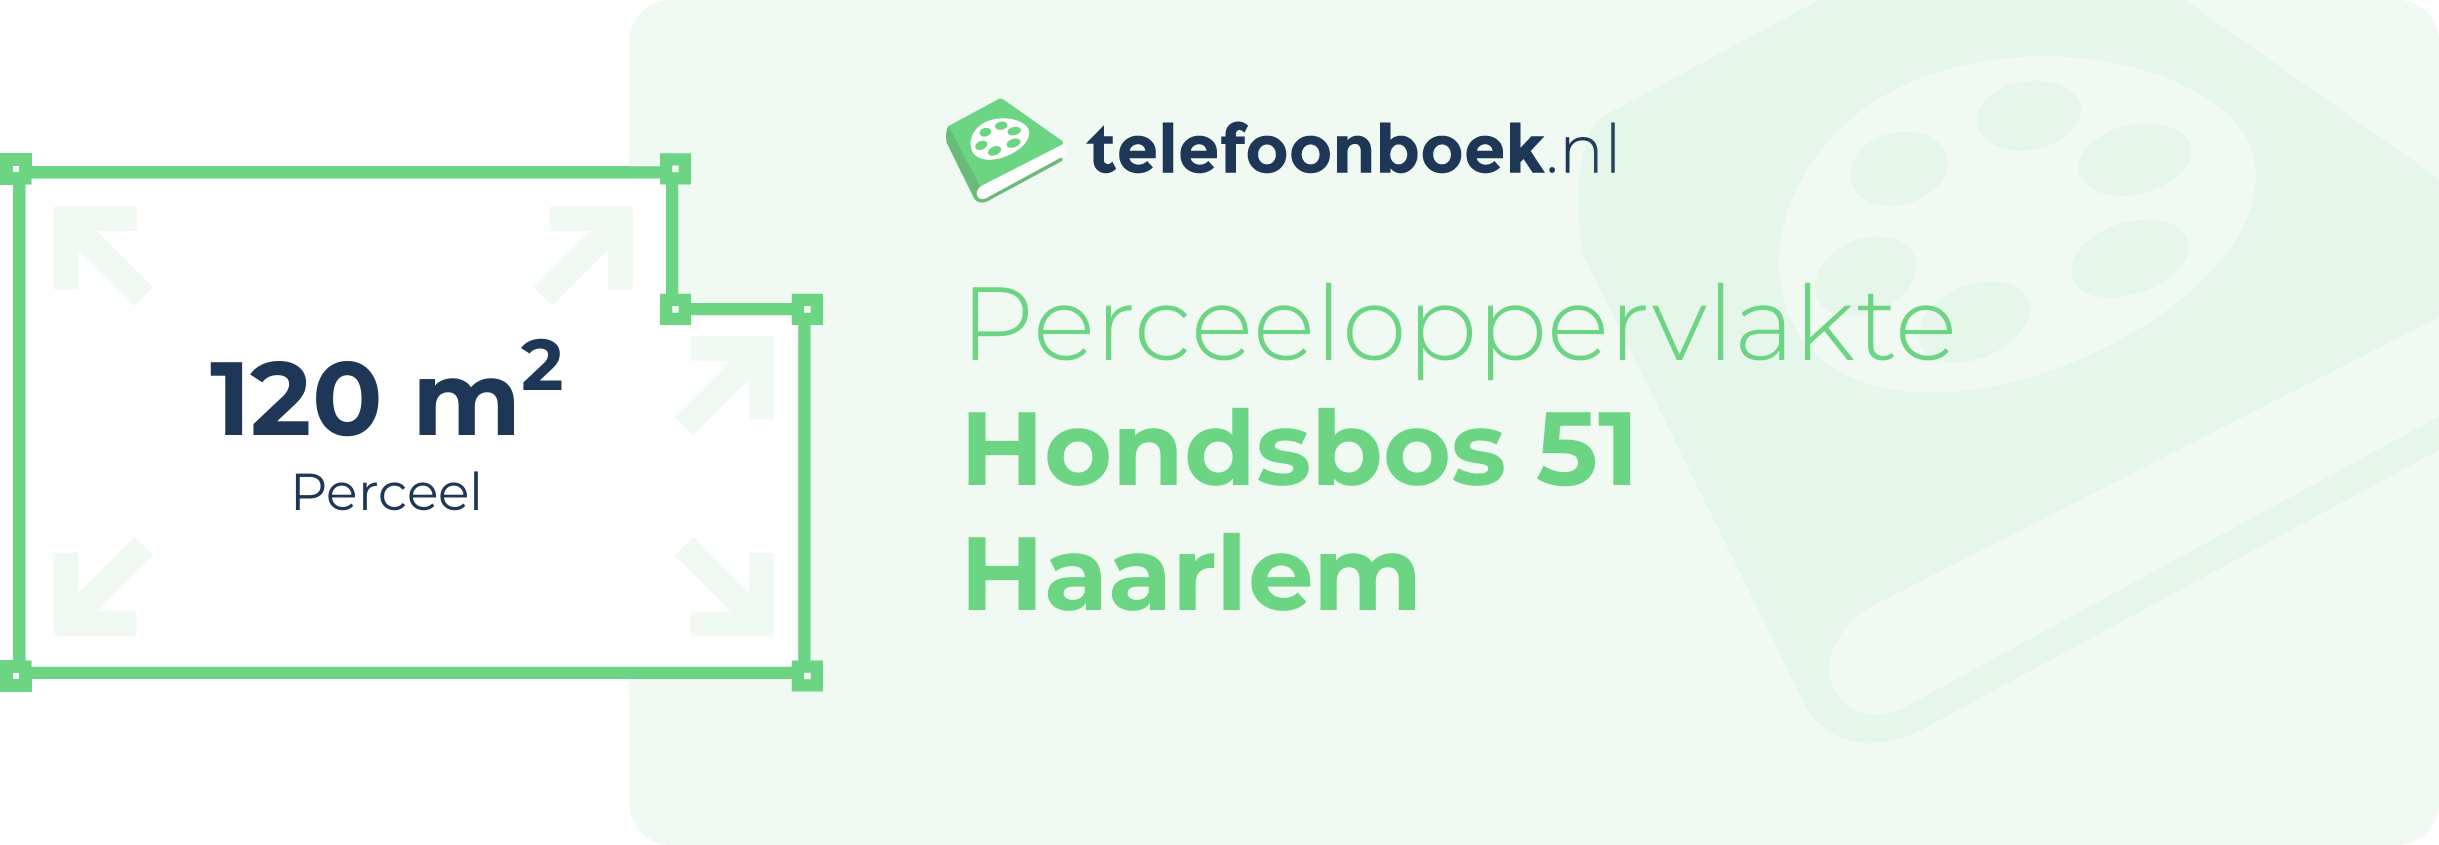 Perceeloppervlakte Hondsbos 51 Haarlem